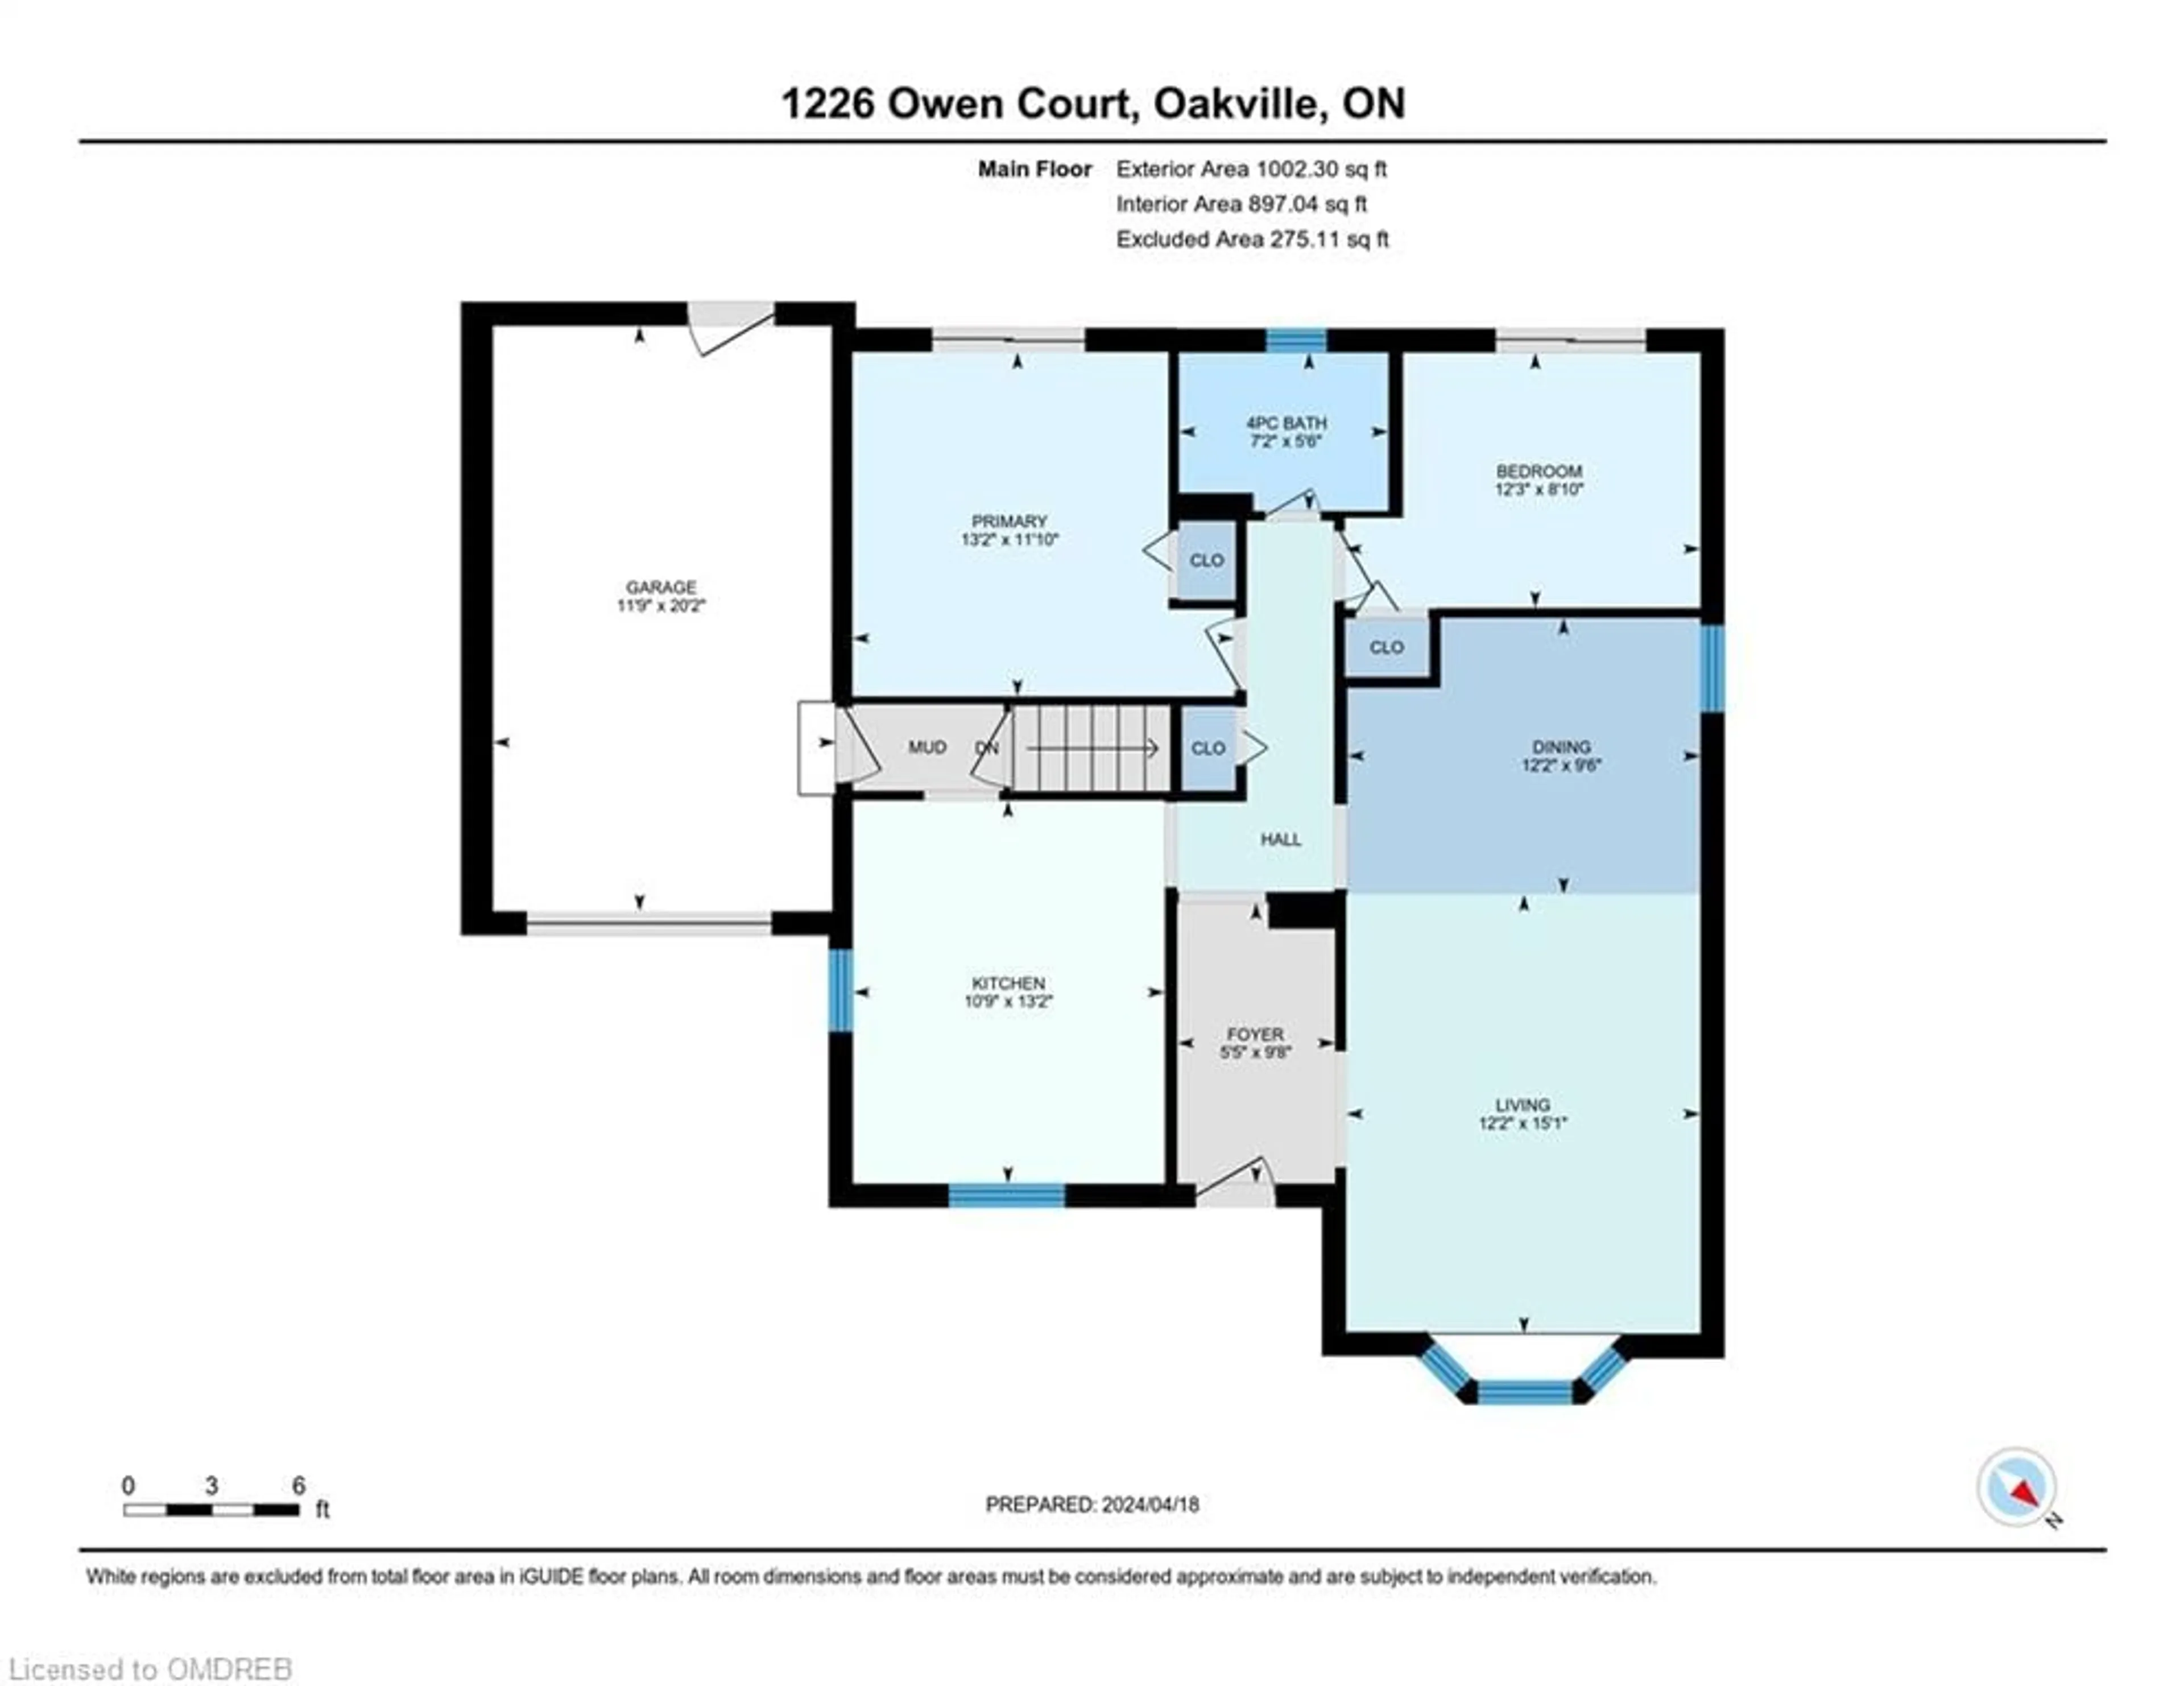 Floor plan for 1226 Owen Crt, Oakville Ontario L6H 1V3